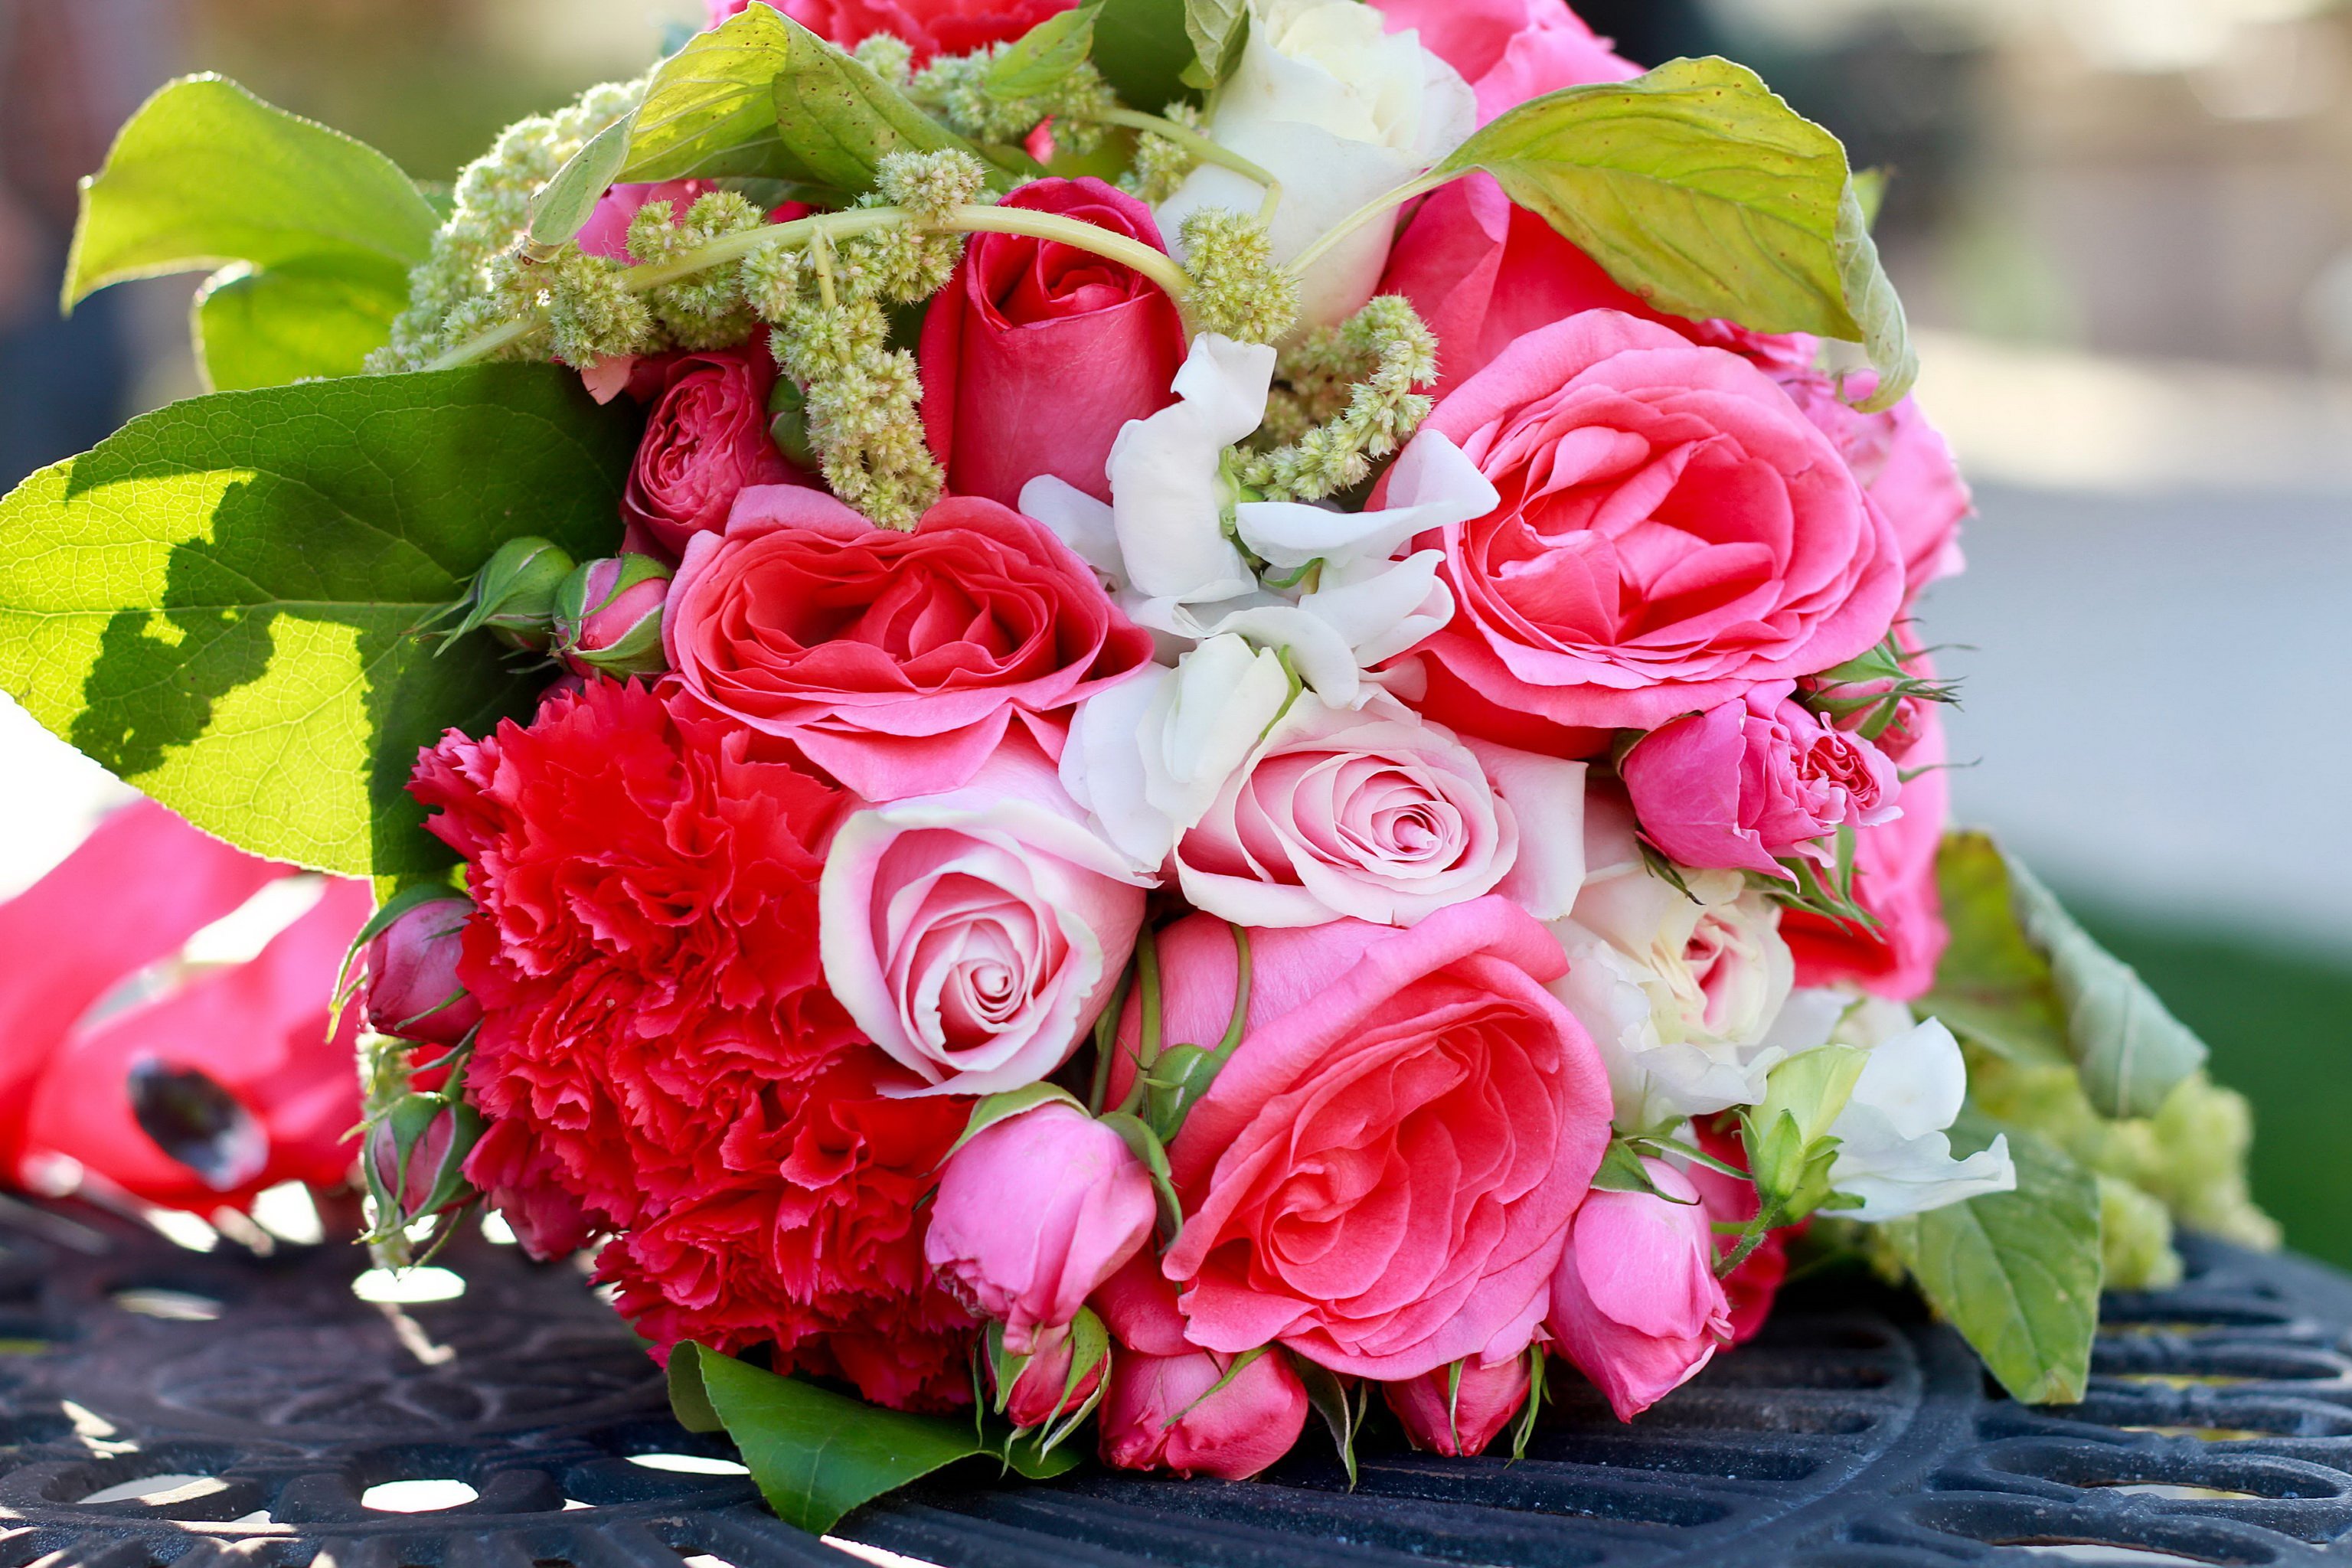 Замечательные розы. Красивый букет. Букет шикарный. Роскошный букет цветов. Шикарный букет роз.